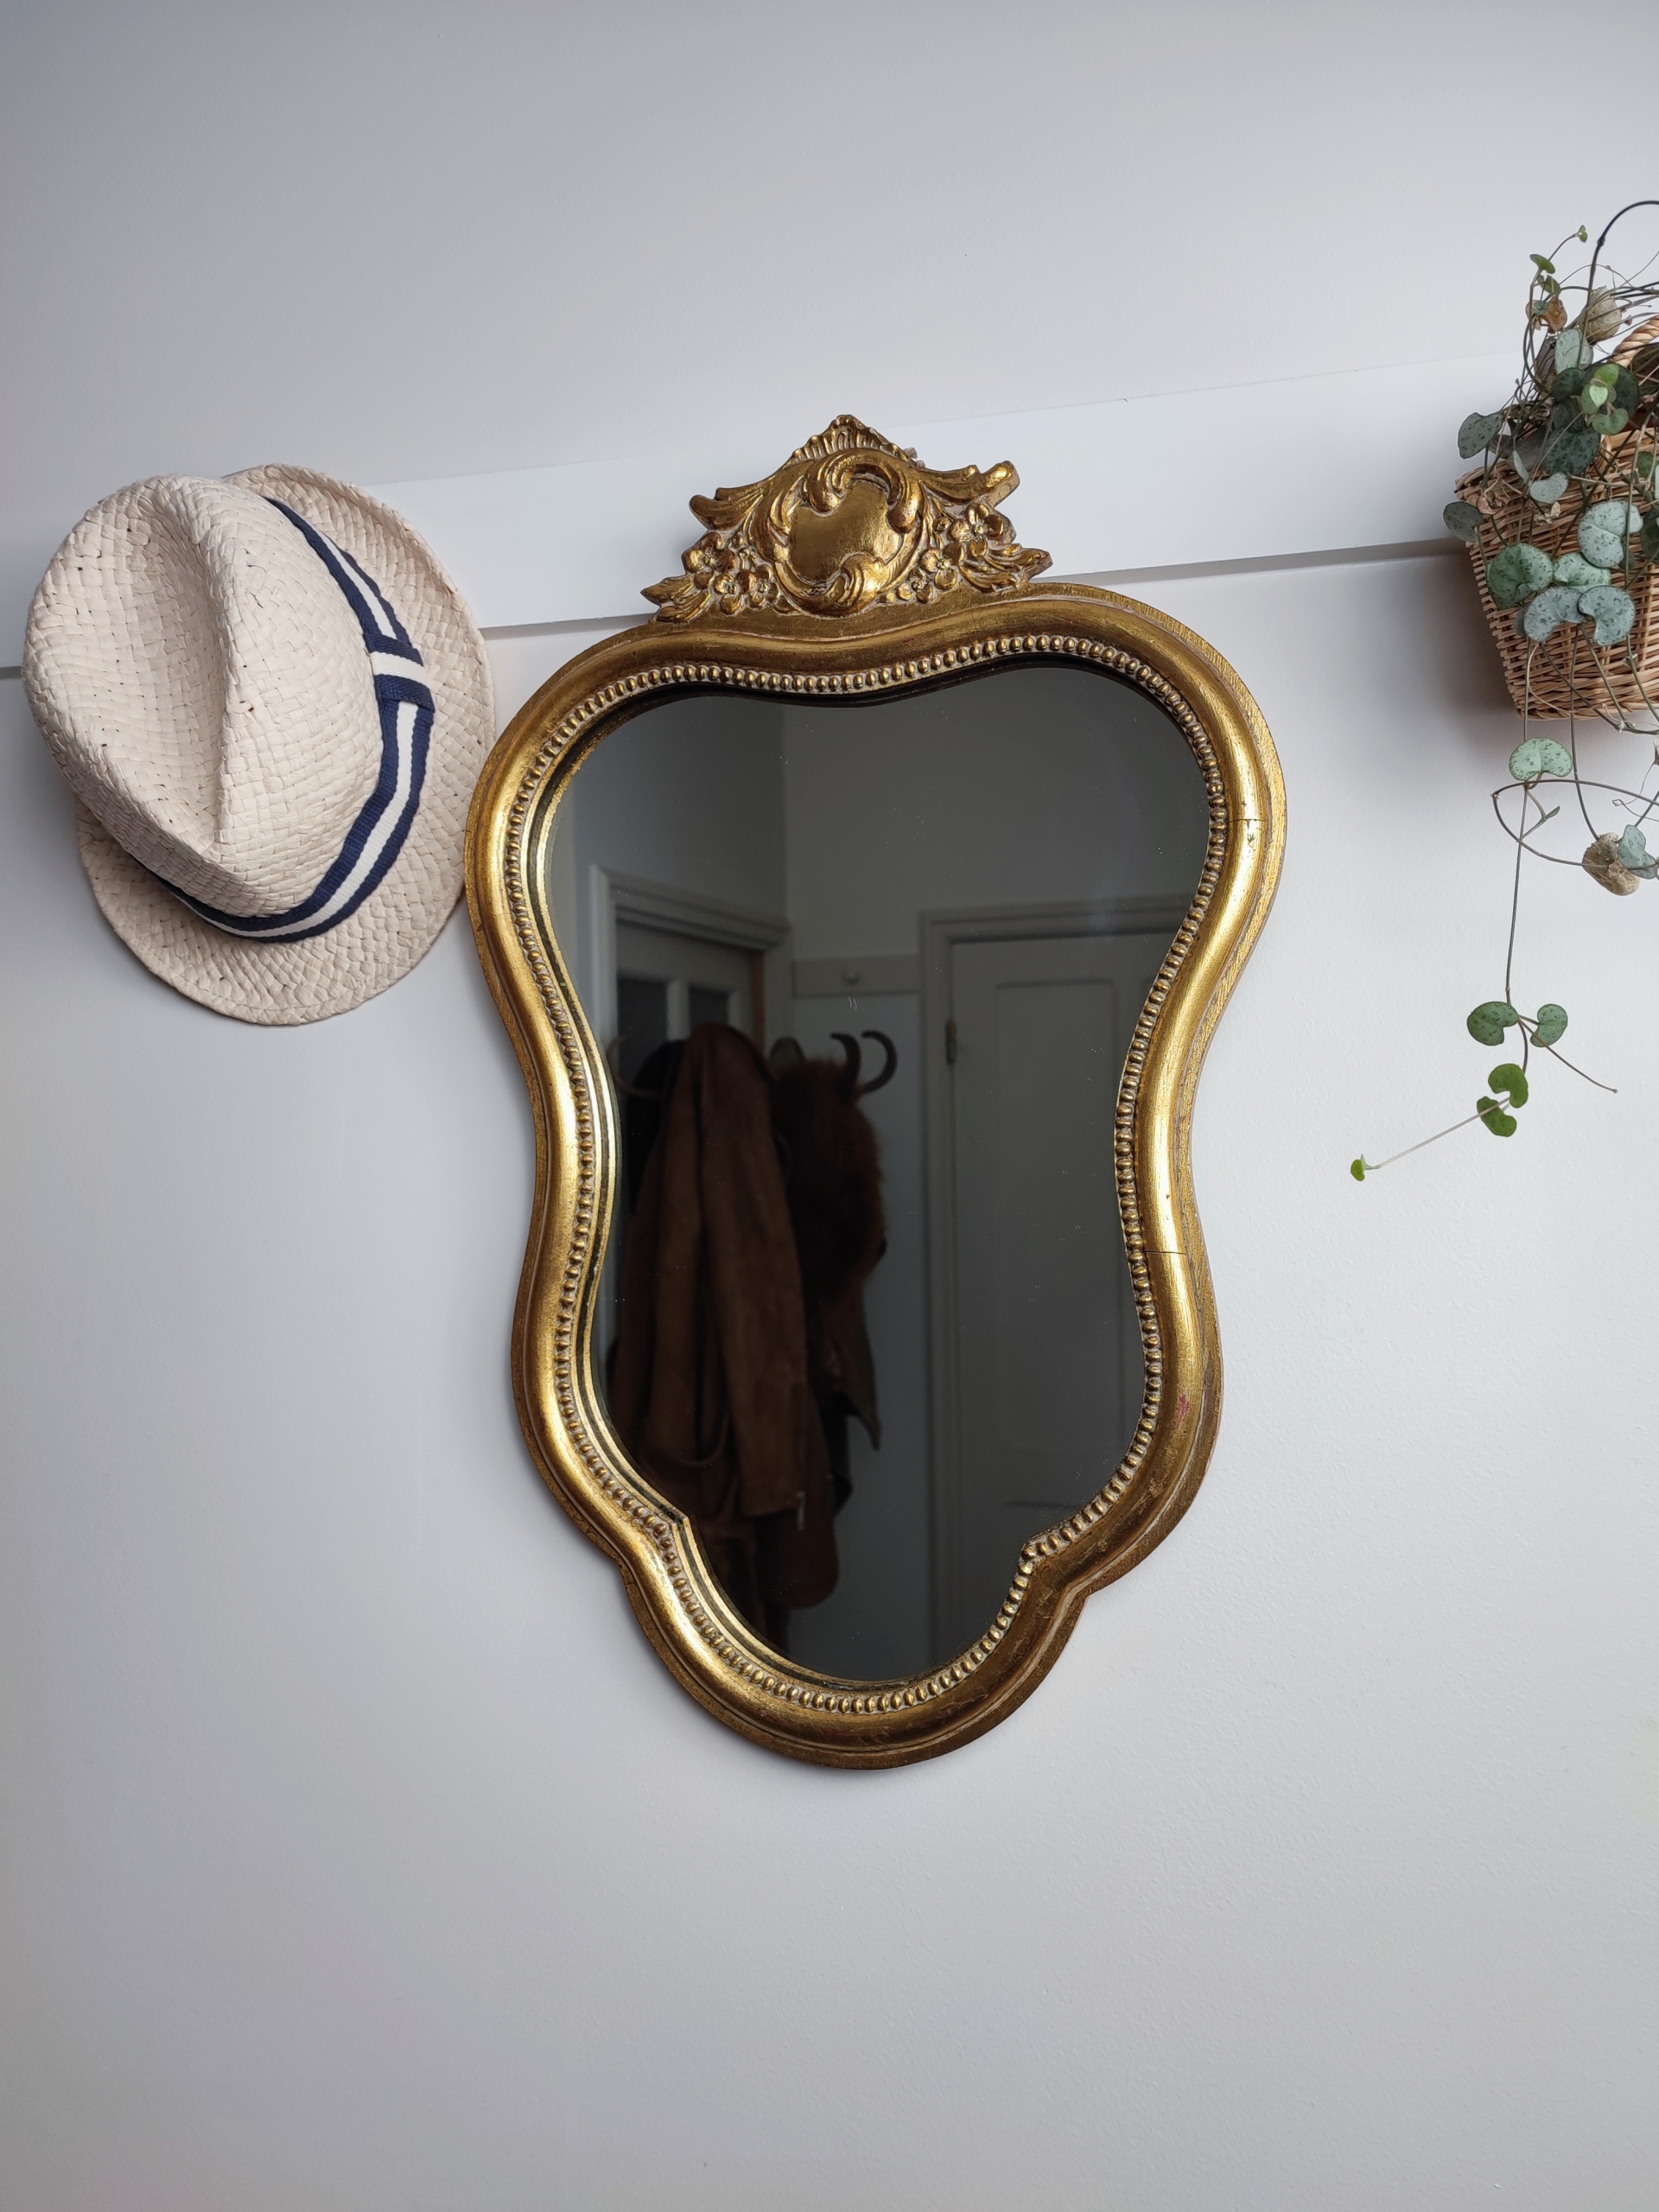 Miroir baroque "Yvette" en bois mouluré, finition doré patiné avec un joli fronton sculpté à son sommet. Inscription Noël 1968 au dos du miroir. Chapeau de paille. Plante verte.